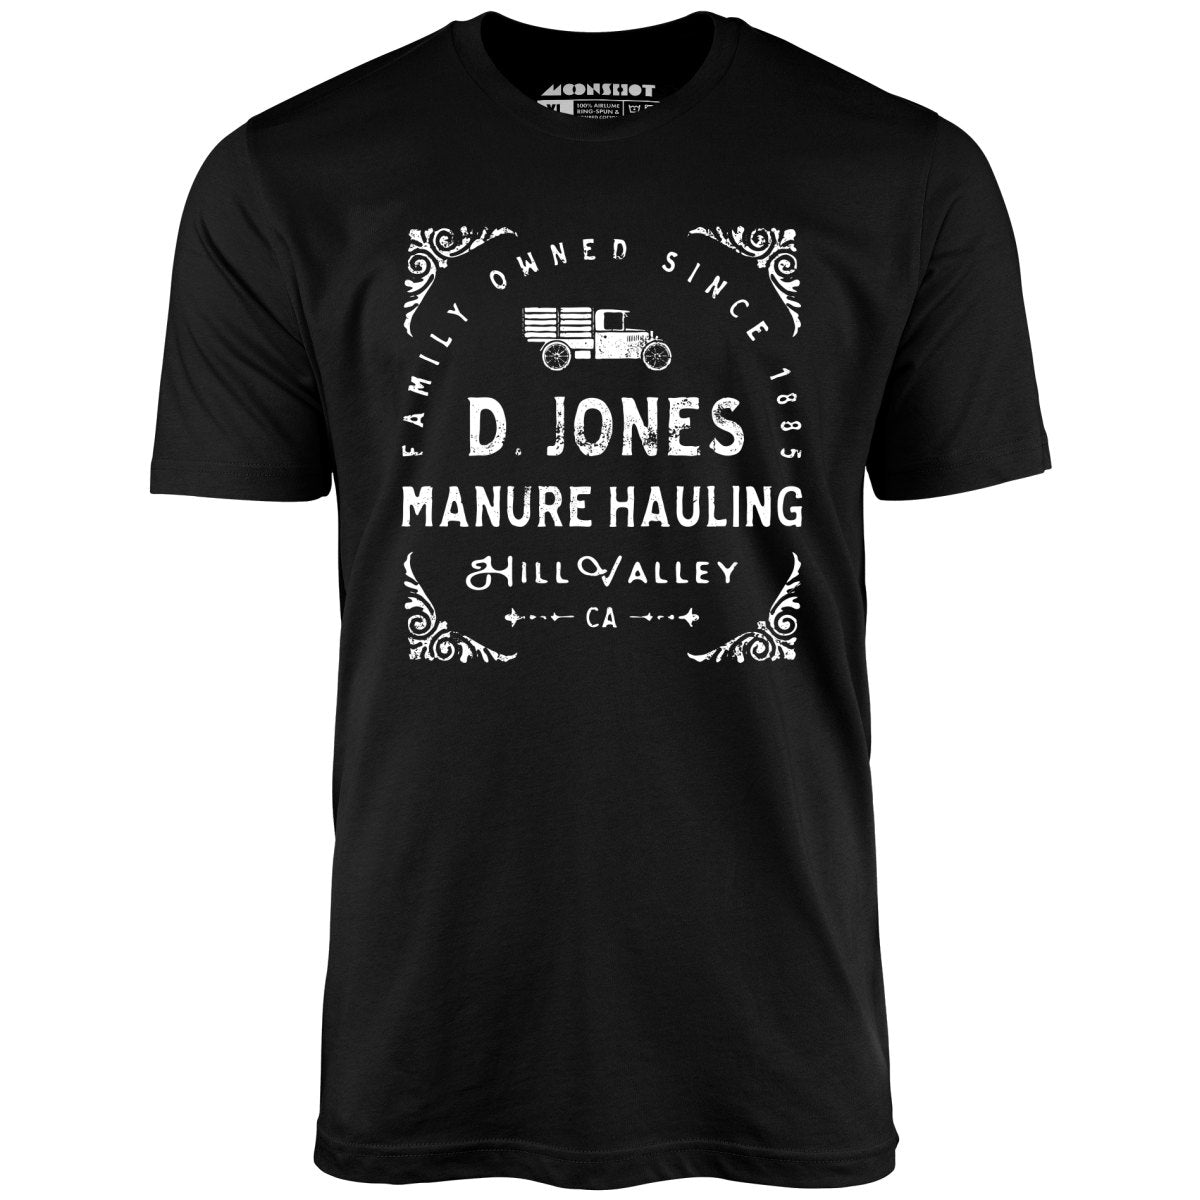 D. Jones Manure Hauling - Hill Valley - Unisex T-Shirt